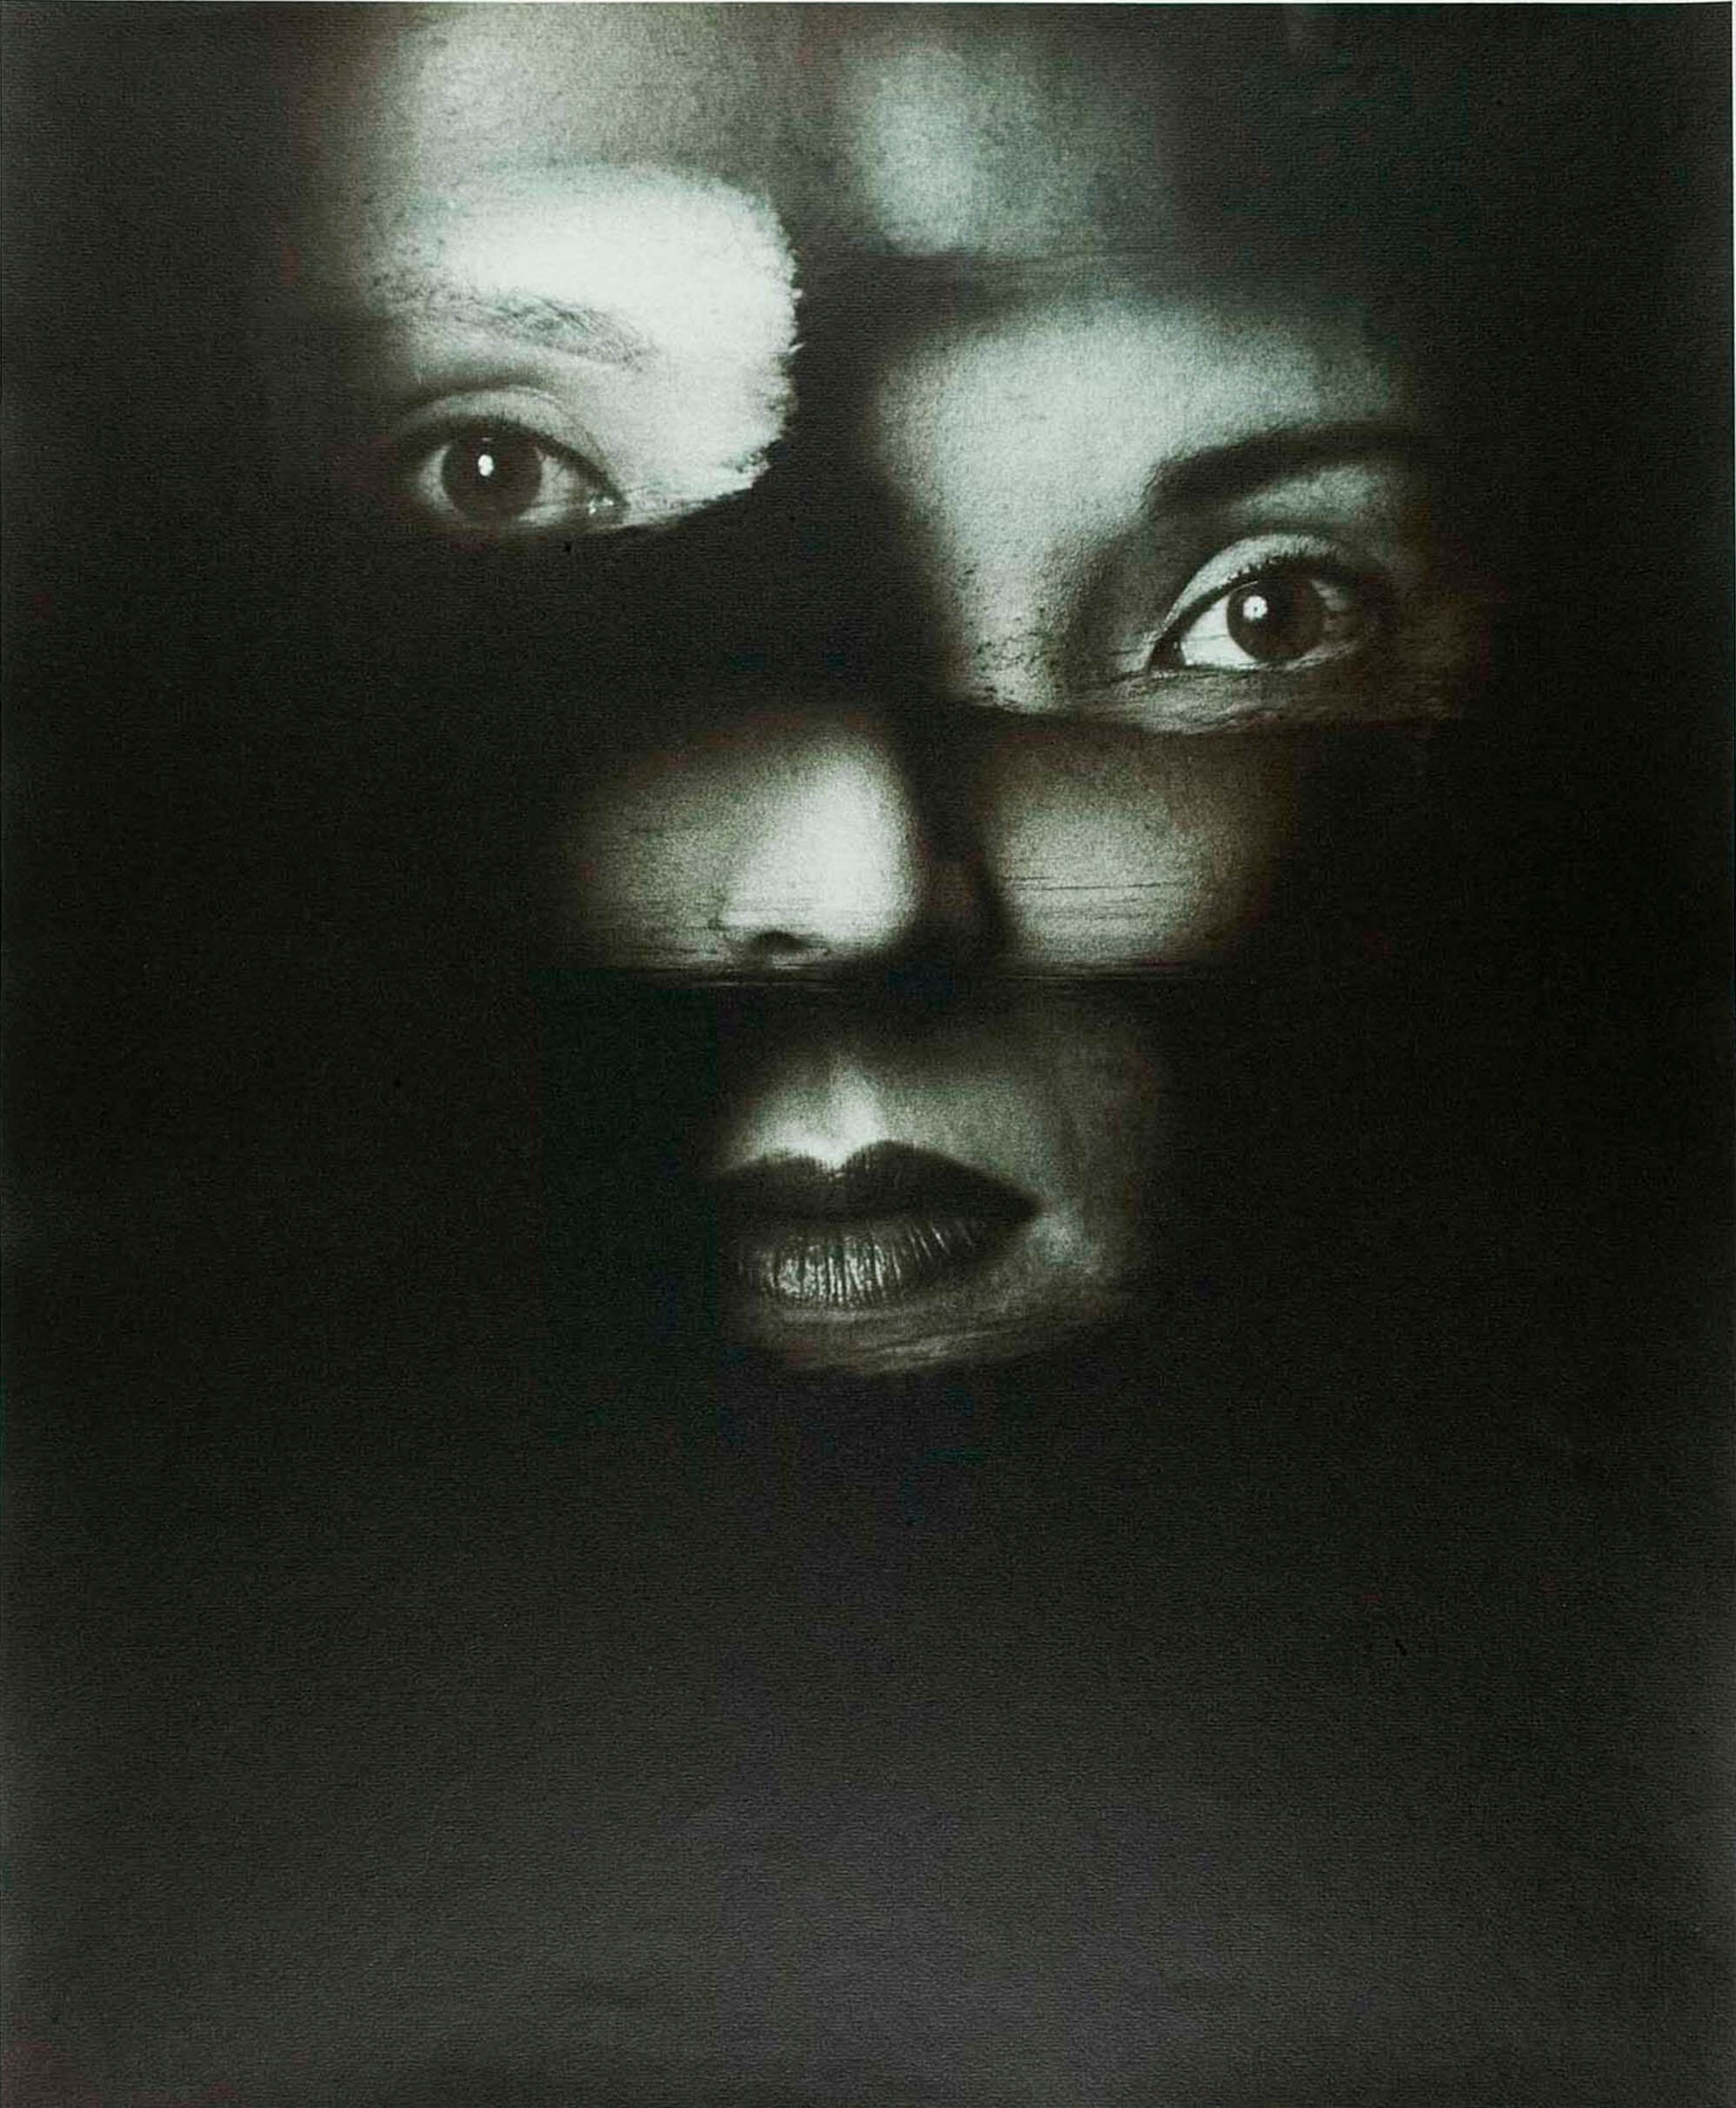 Лабиринт, 1986 г. Фотограф Дэвид Сайднер